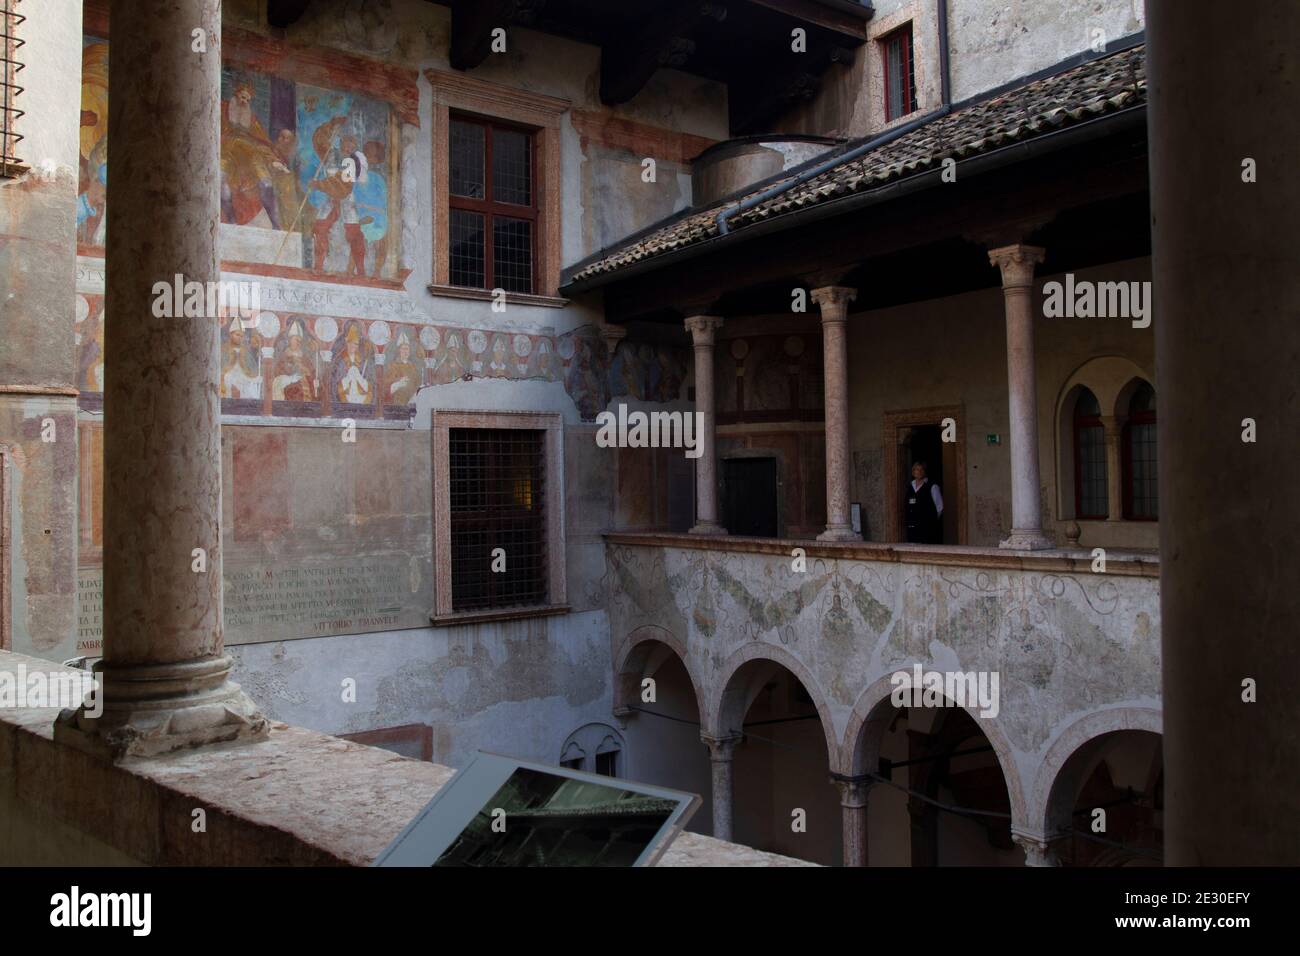 Das Schloss Buonconsiglio in Trient. Trient, Trient, Trentino-Südtirol, Italien, Europa. Stockfoto